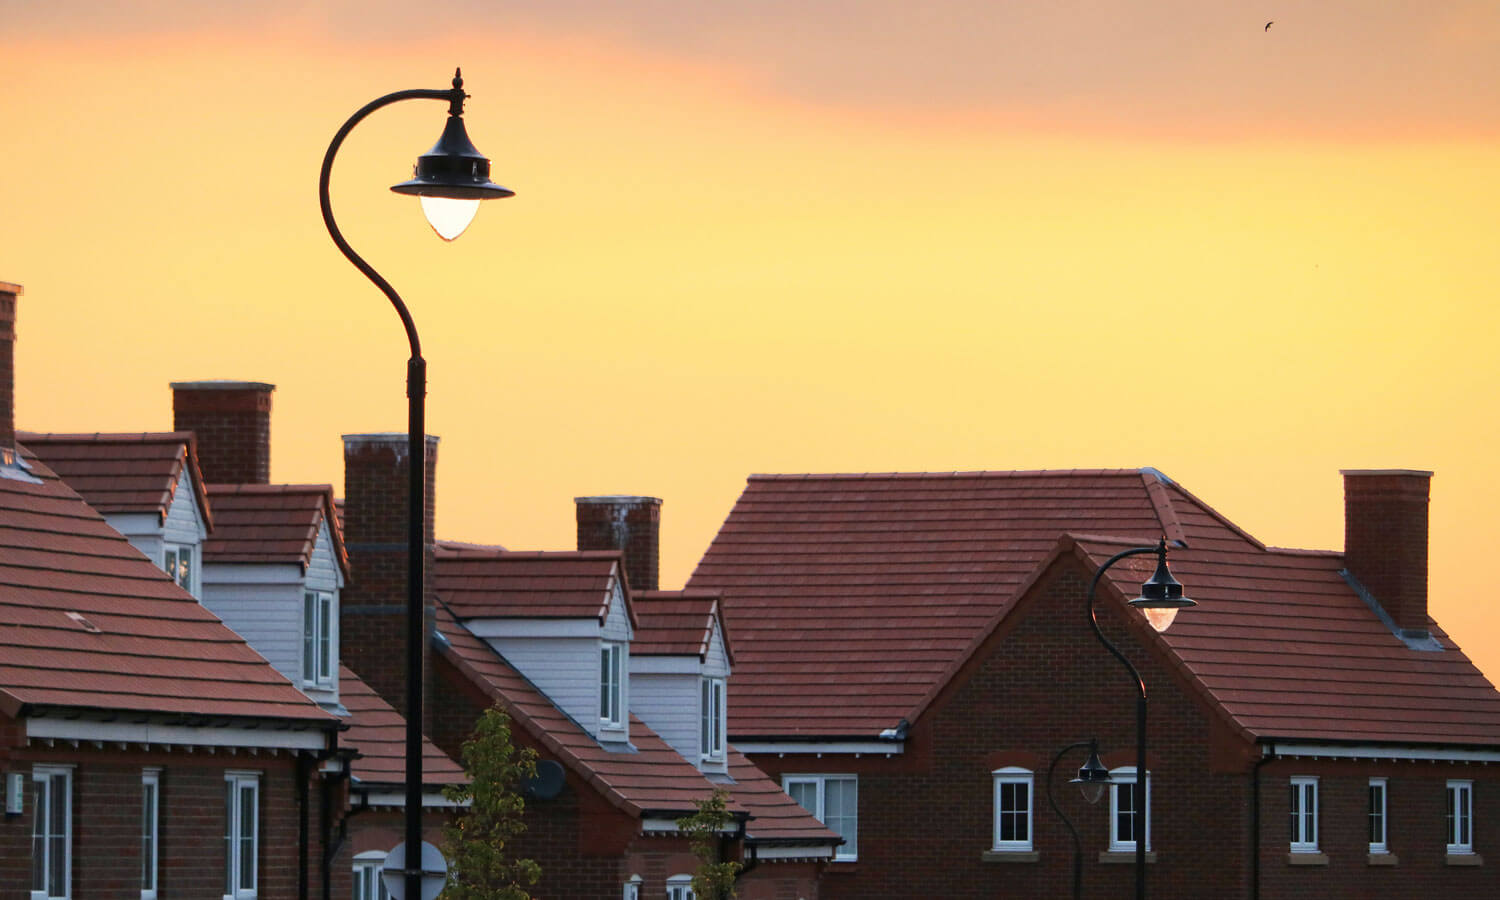 The sun is setting on a row of houses on a suburban street.